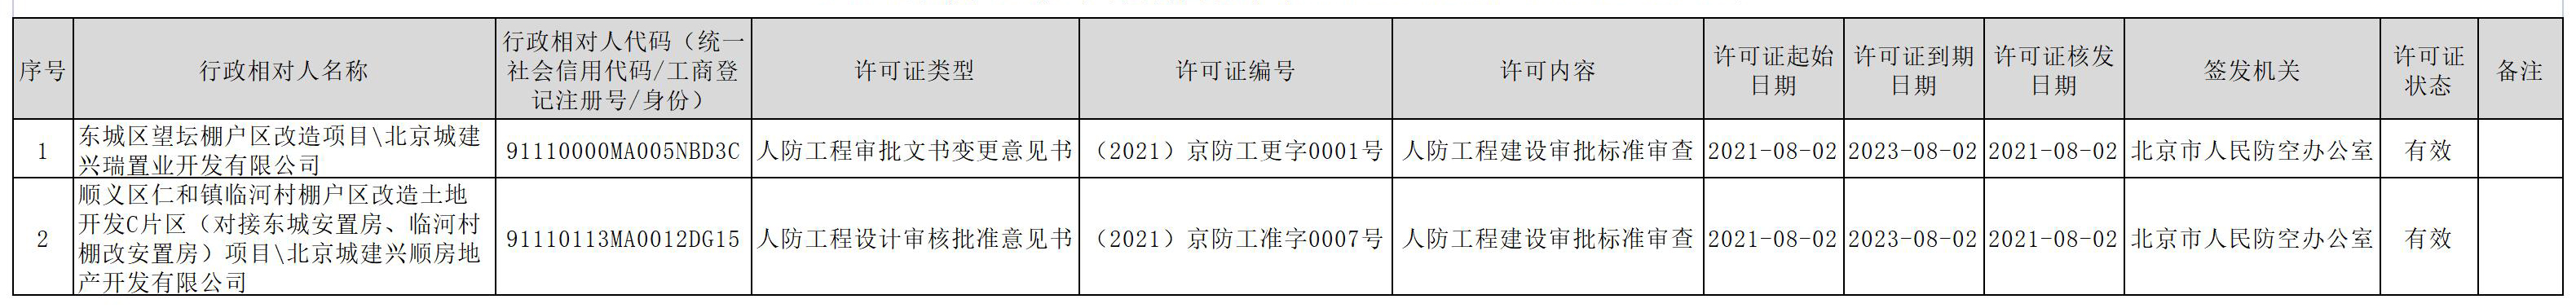 2021京防工准字数据统计(2021.07.19-2021.08.06) .jpg